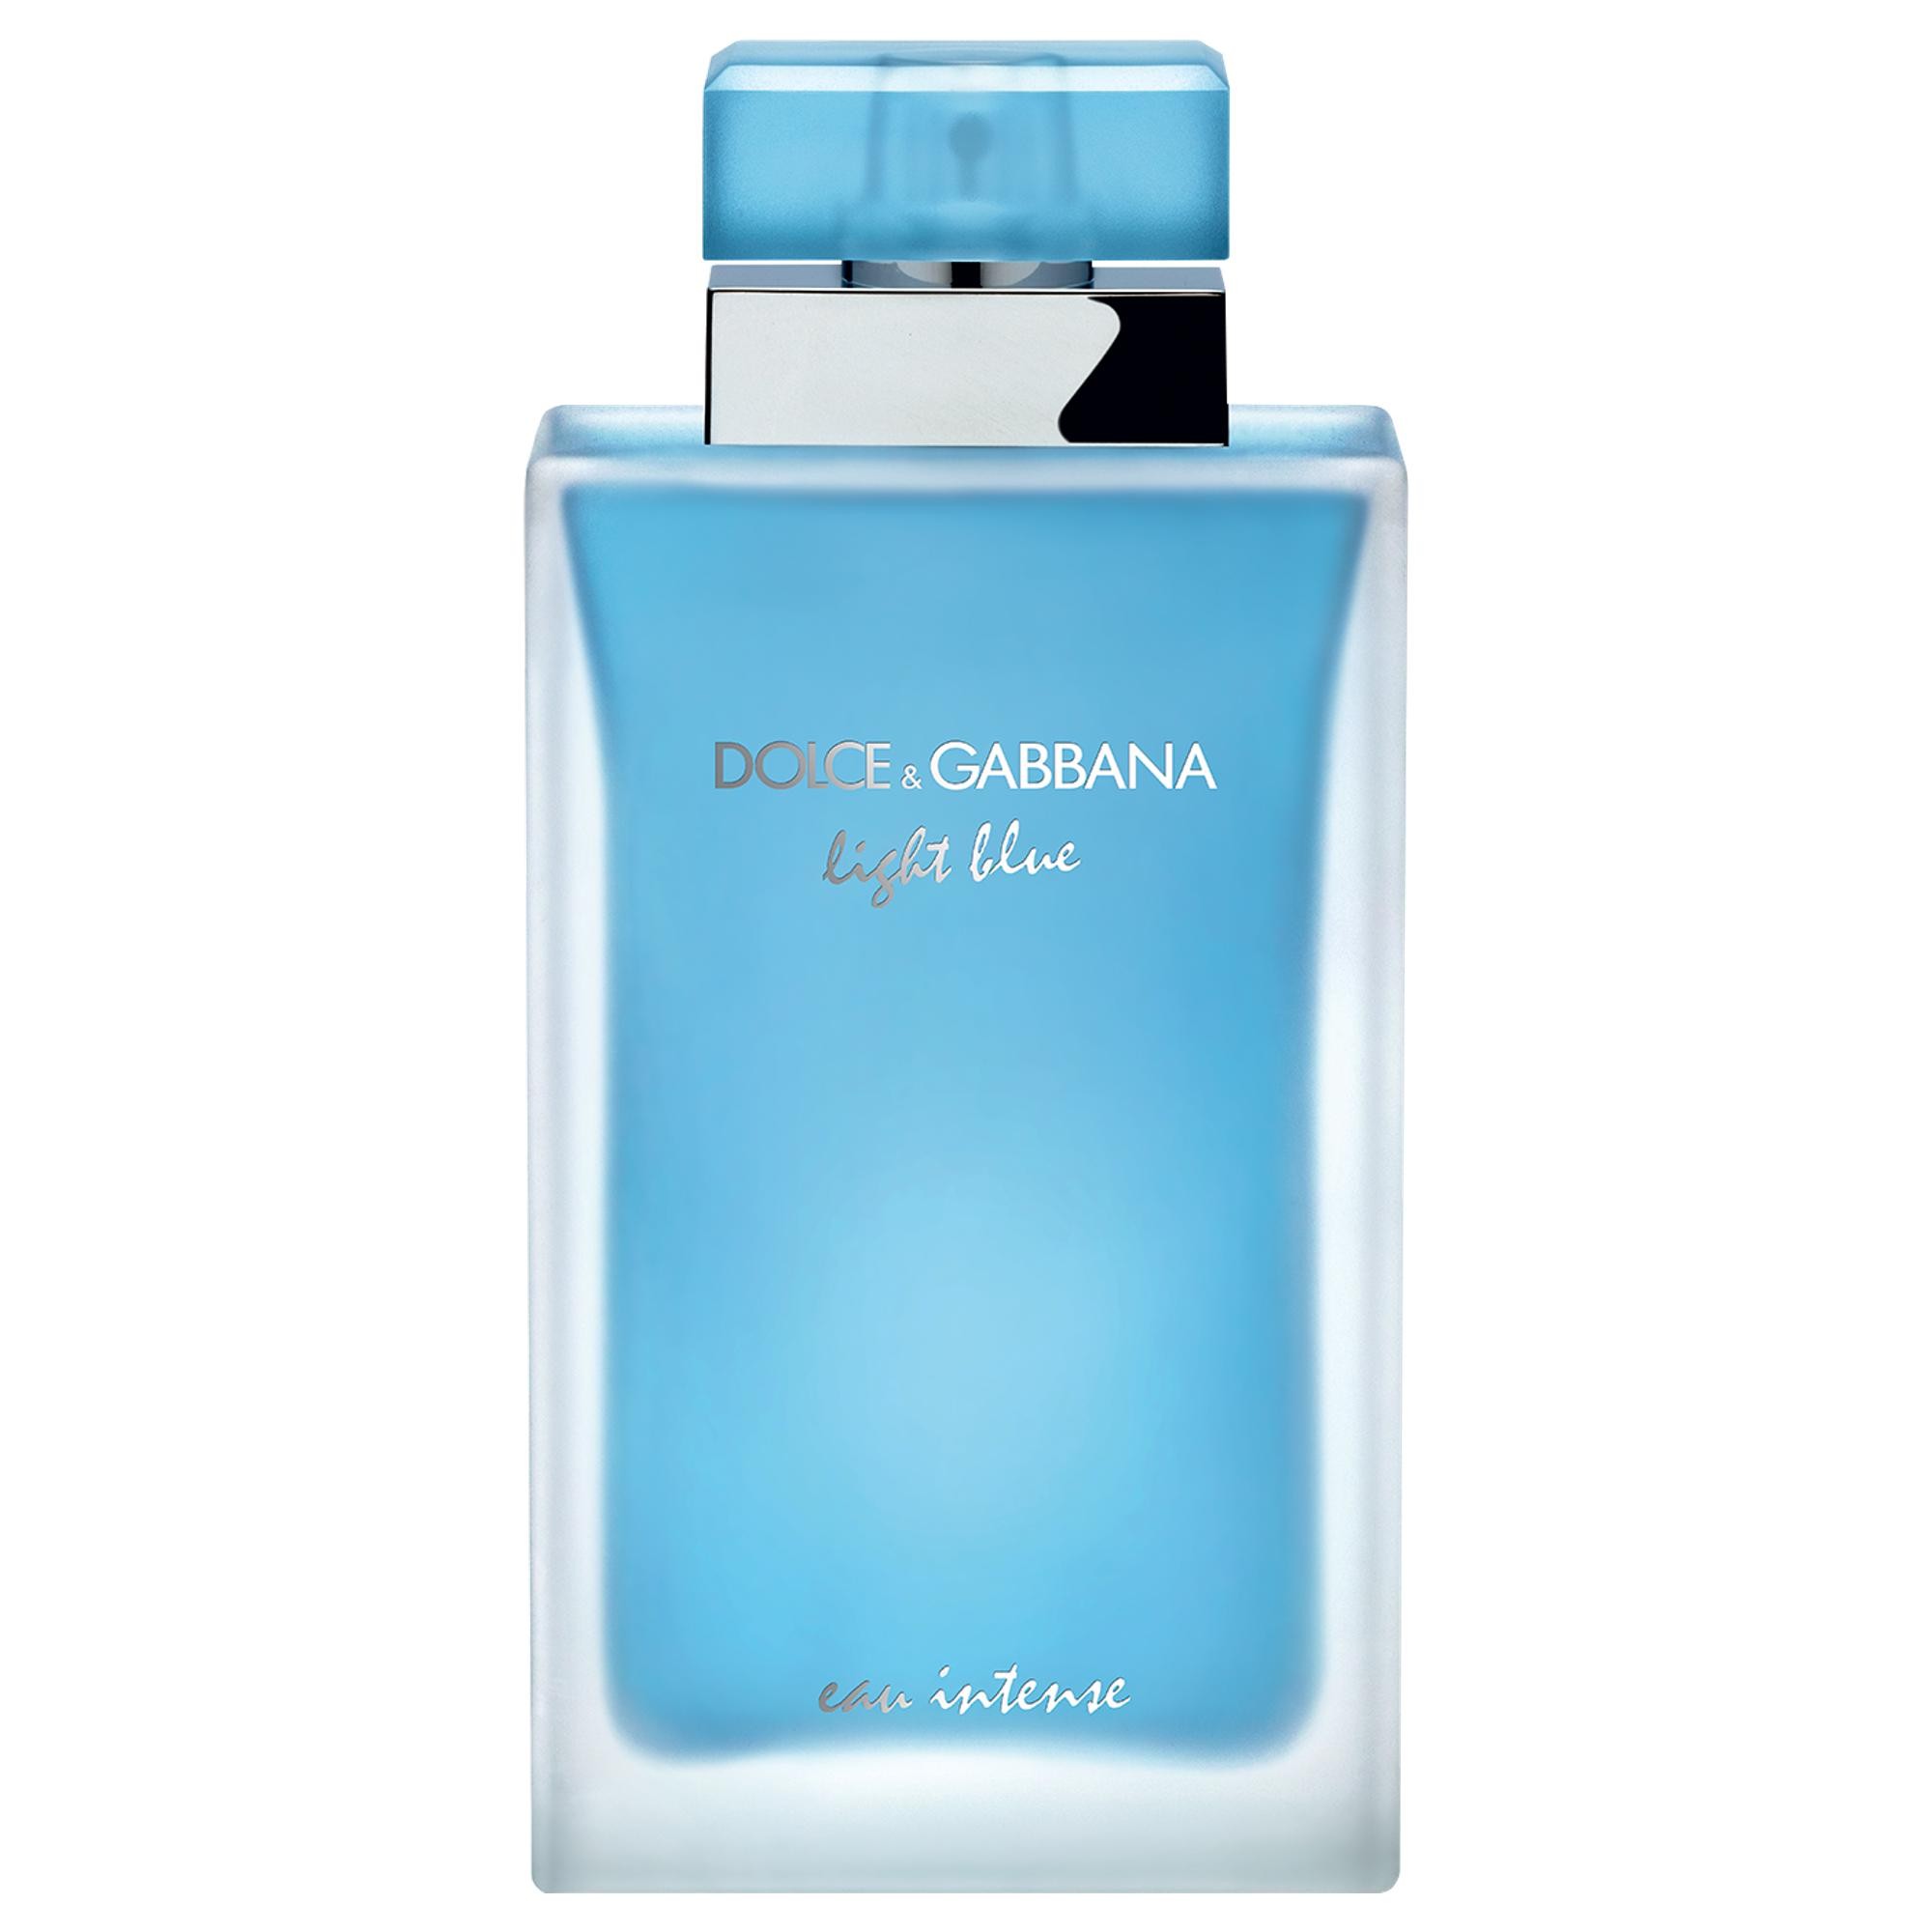 Туалетная вода дольче габбана лайт. Dolce Gabbana Light Blue 100мл. Dolce Gabbana Light Blue intense. Dolce & Gabbana Light Blue Eau intense. Dolce Gabbana Light Blue женские.